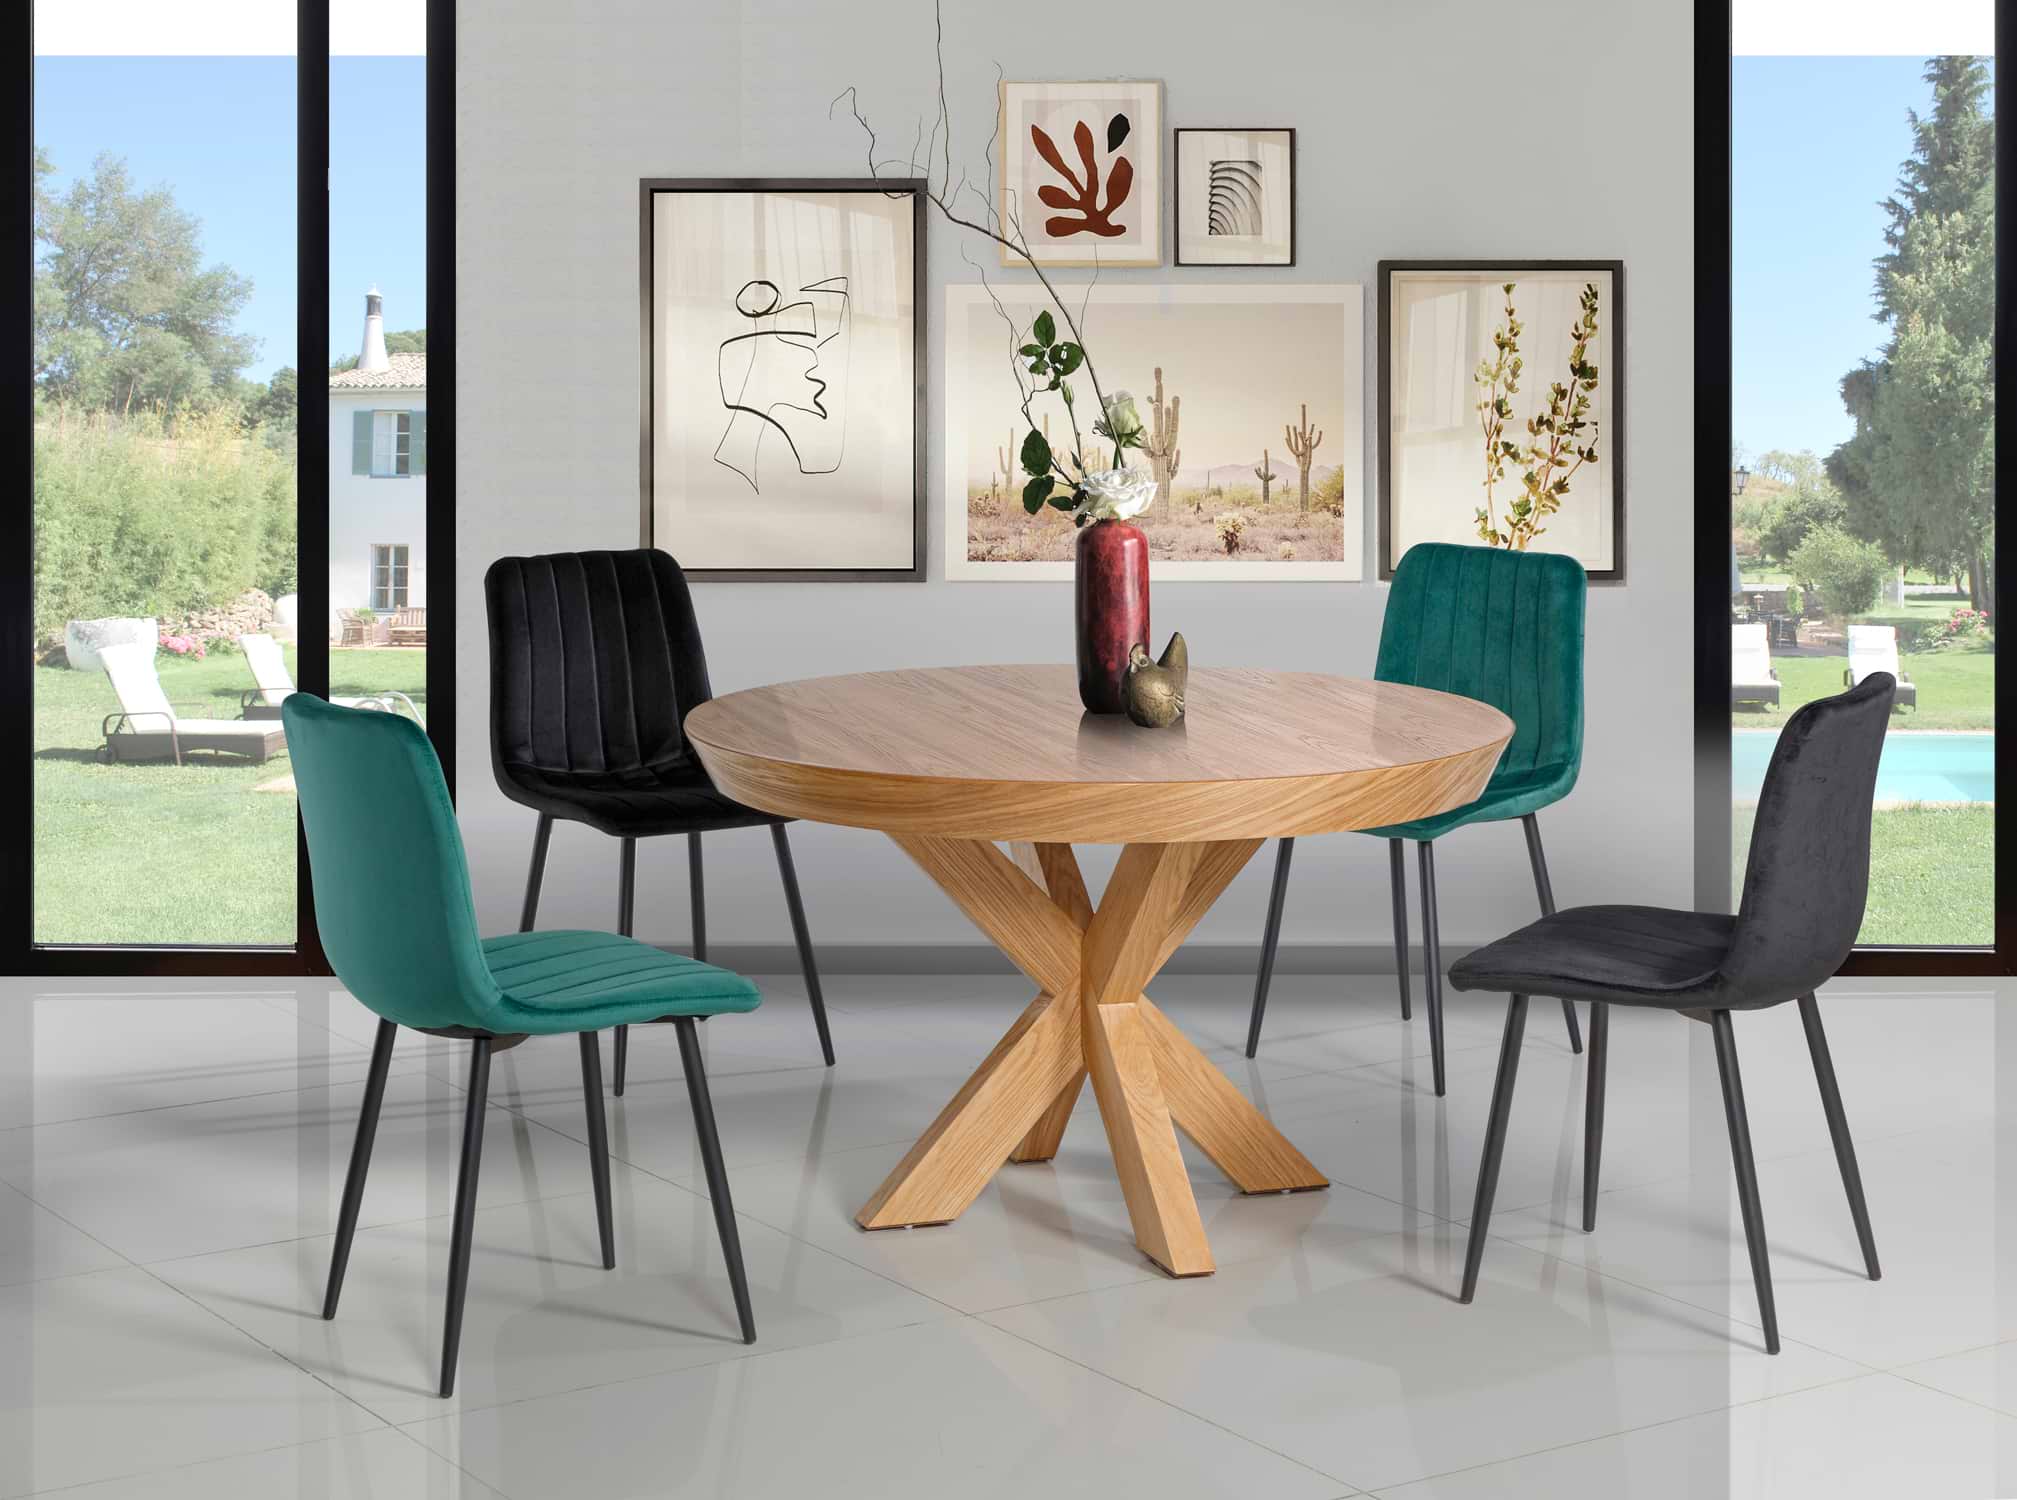 פינת אוכל עגולה מפוארת ורגלי עץ דגם ארומה מרקורי ו4 כסאות צבע כחול לאונרדו LEONARDO